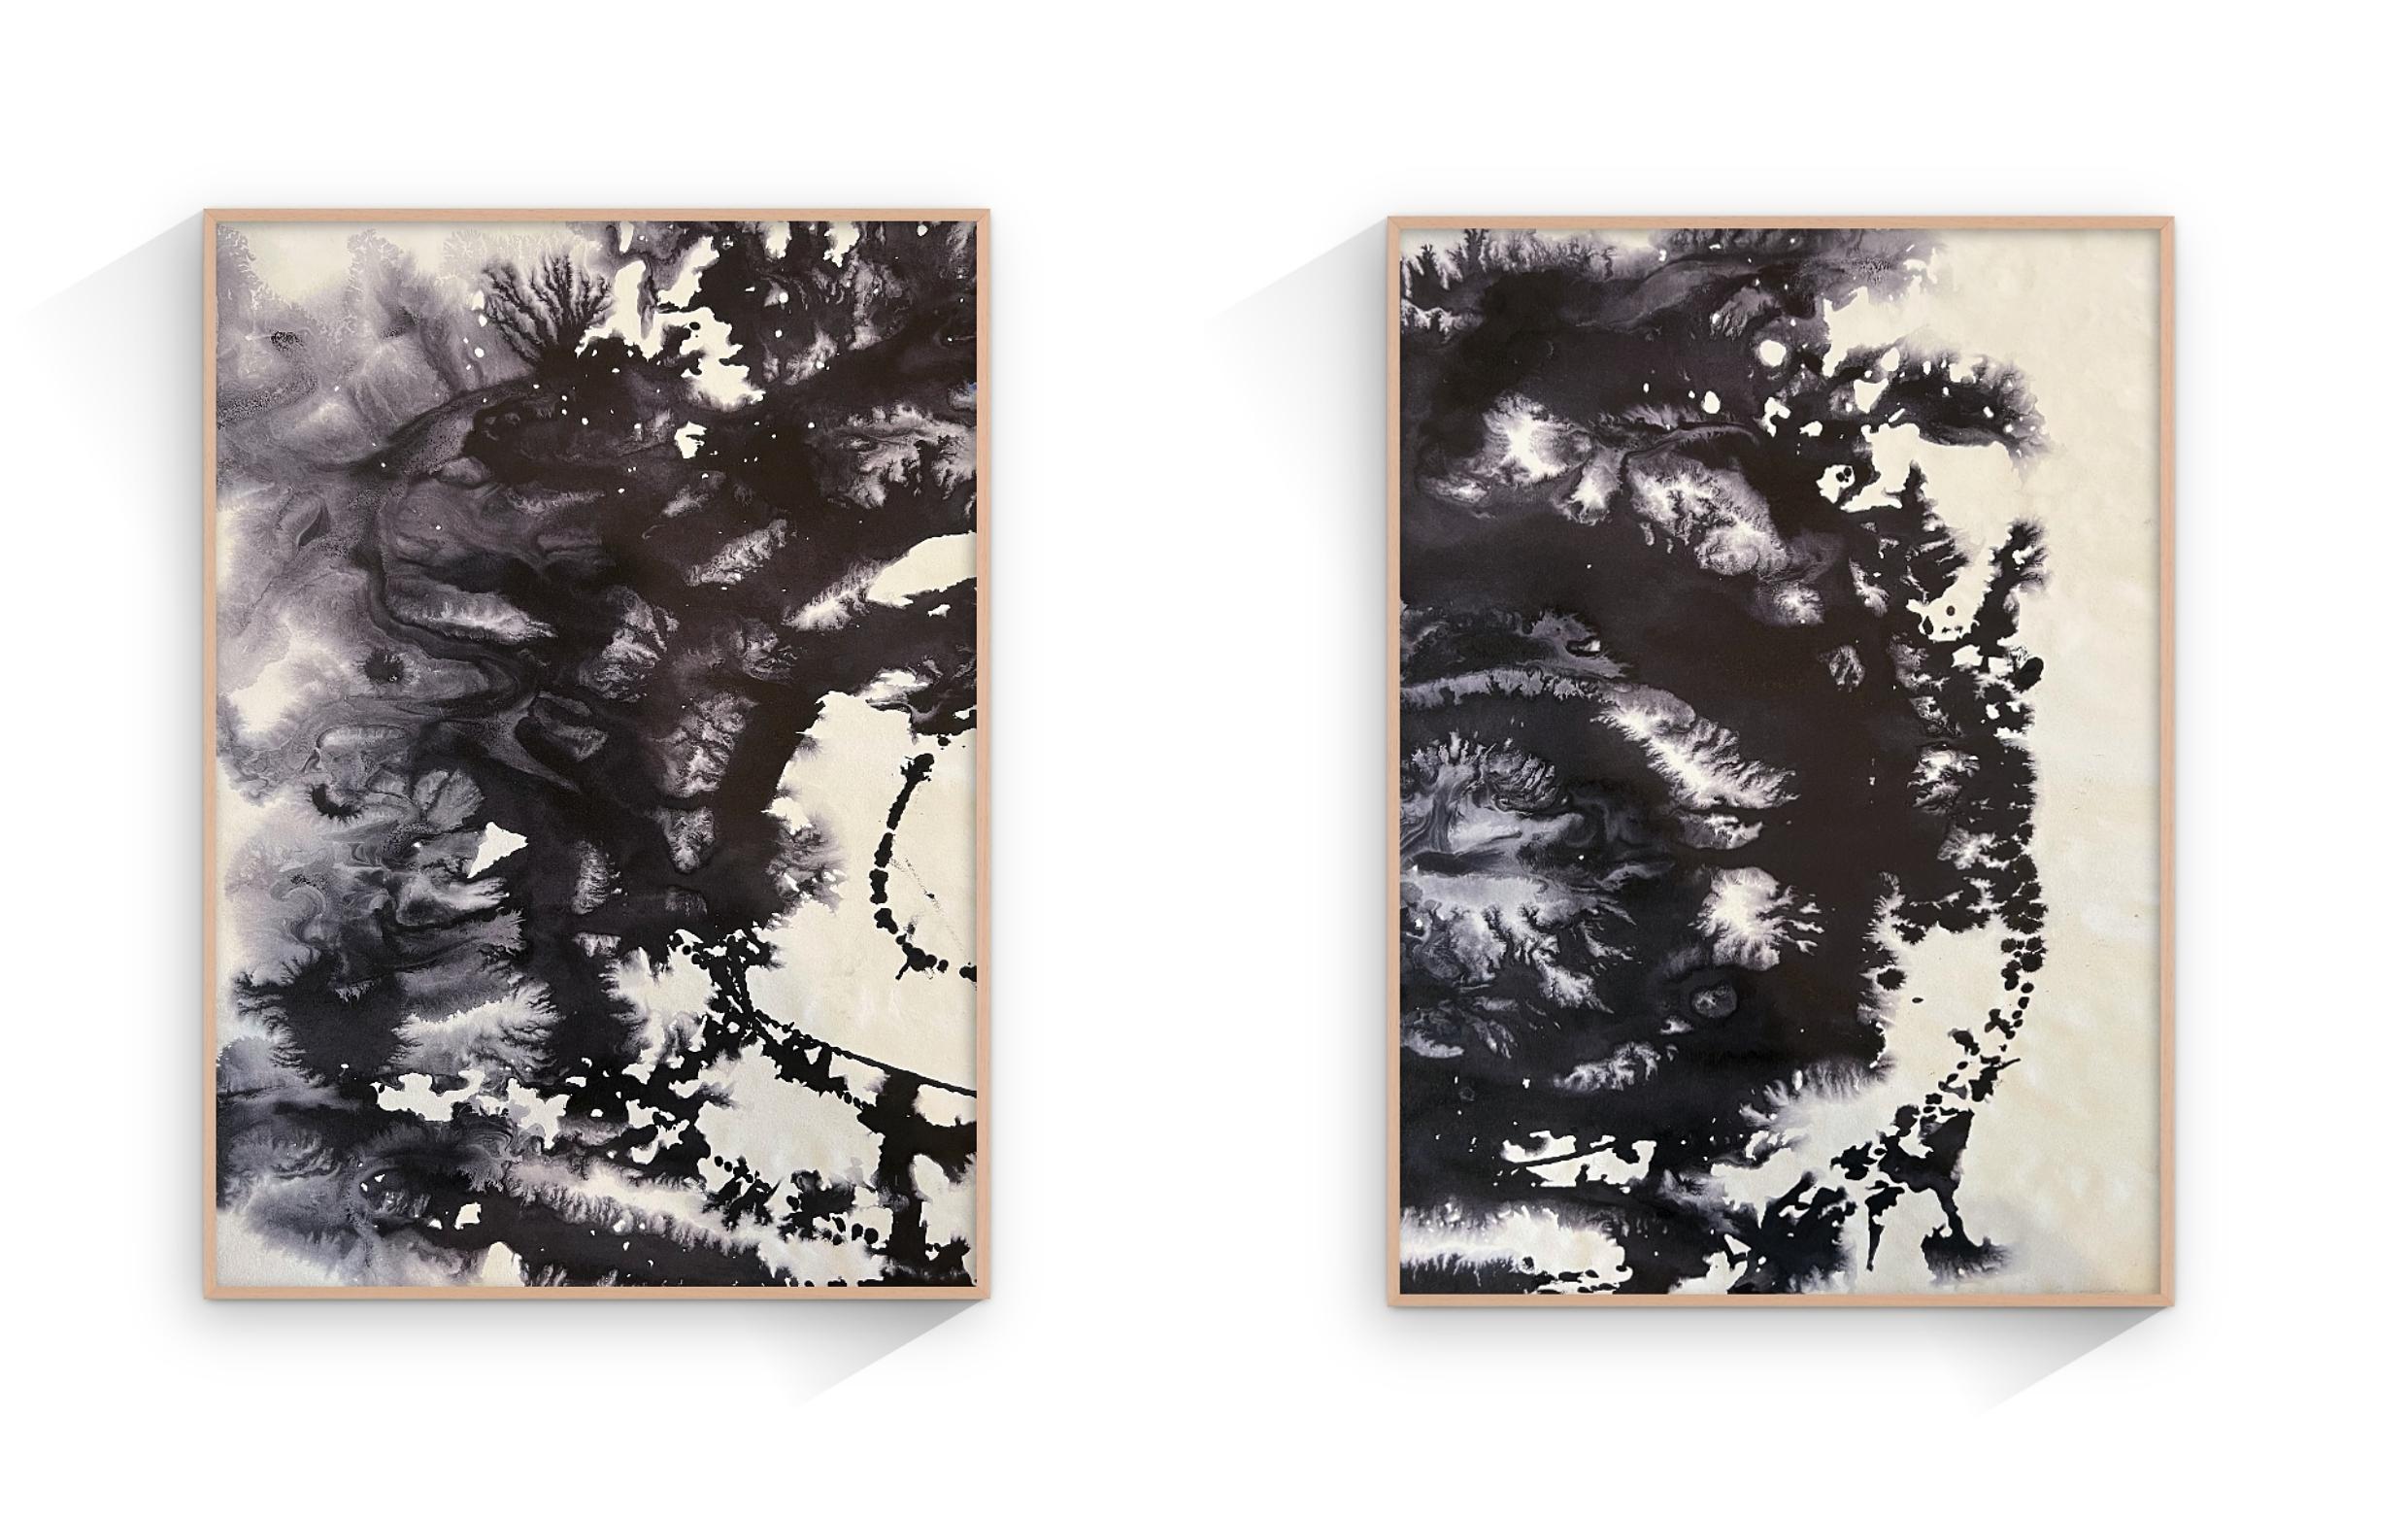 Black And White Minimal Painting ist ein Original-Kunstwerk von TUSET aus dem Jahr 2020. Das Gemälde ist ungerahmt, auf Anfrage können wir es in Naturholz oder schwarz rahmen.

Der Titel dieses Werks lautet 